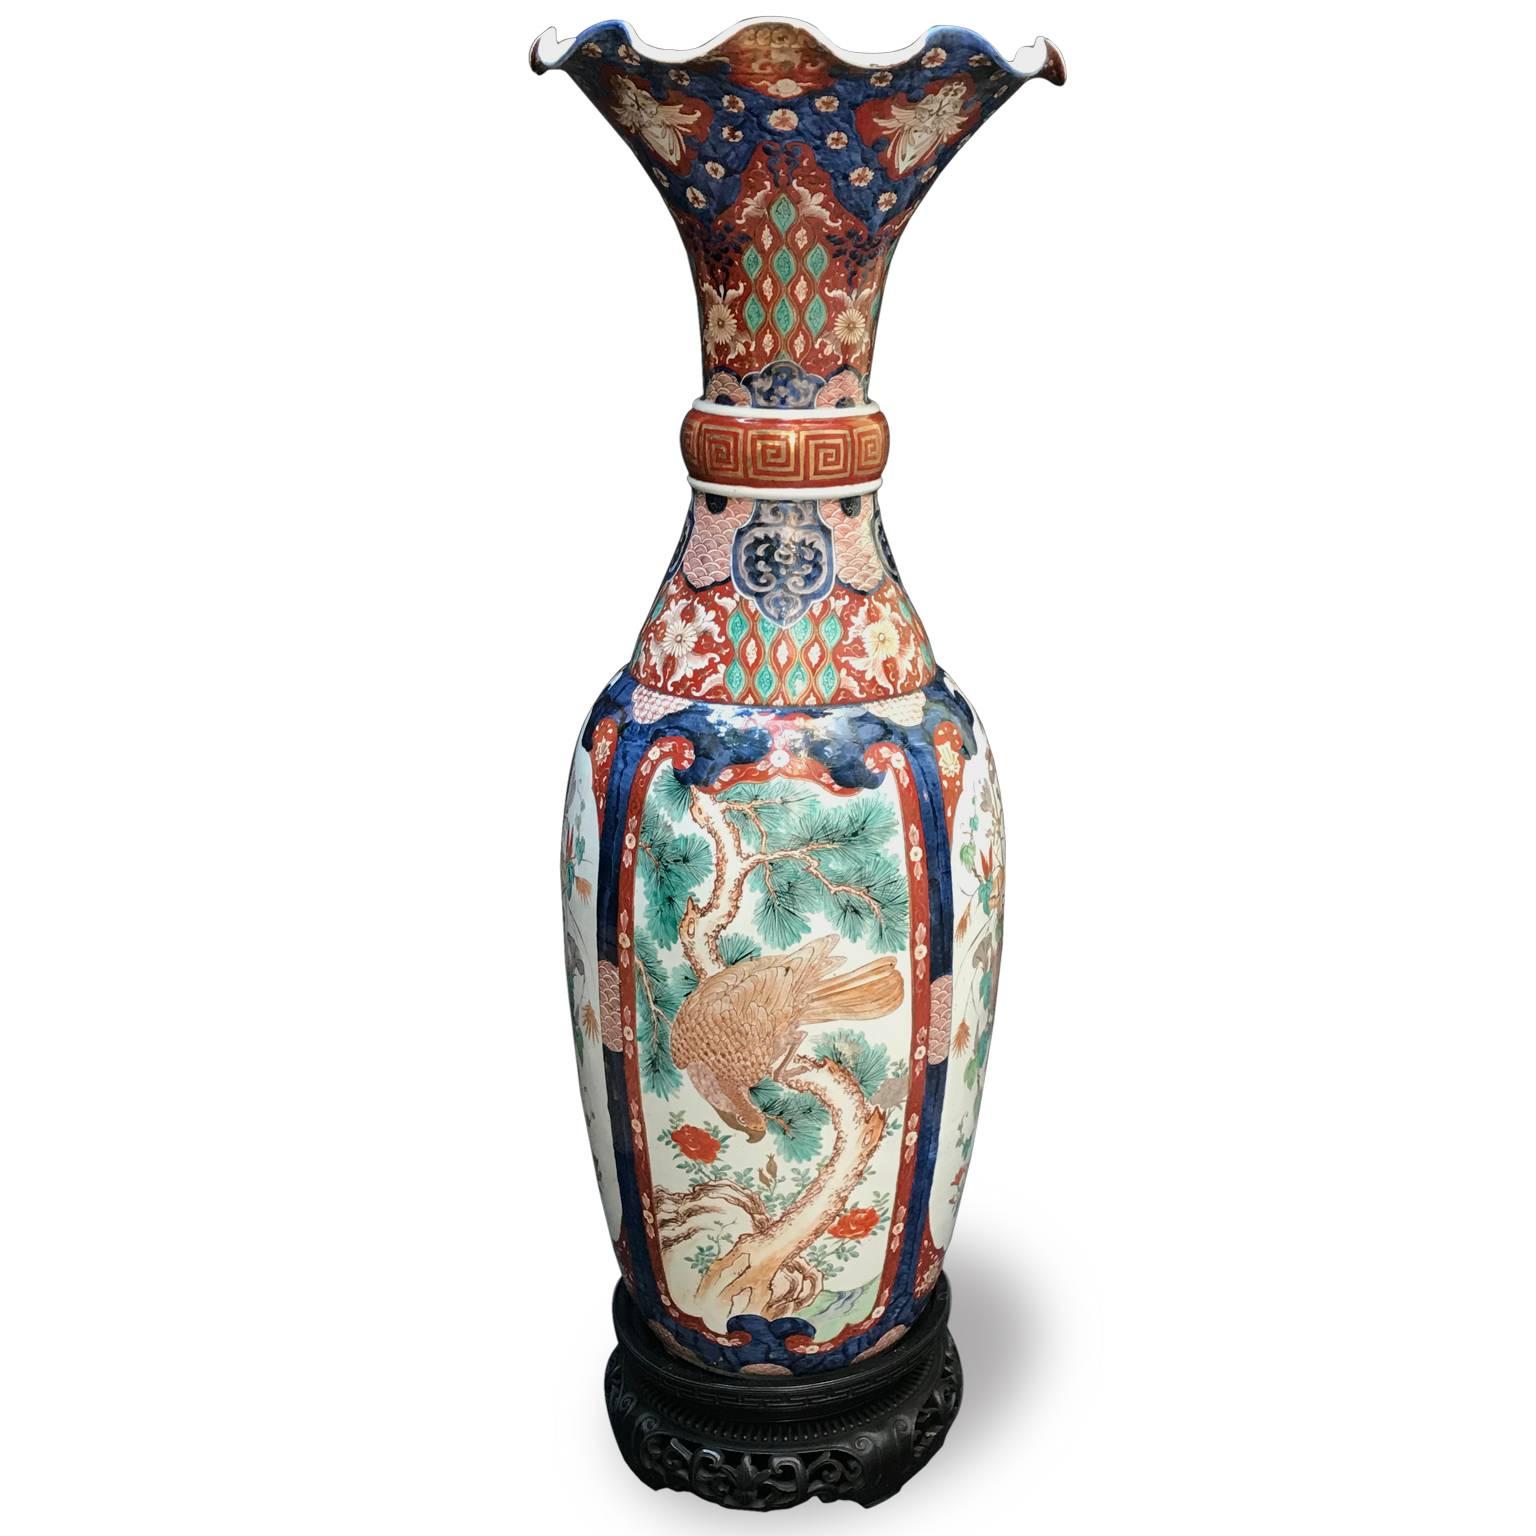 Pair of Large Imari Vases 19th Century Japanese Blue Red White Porcelain Vases 6